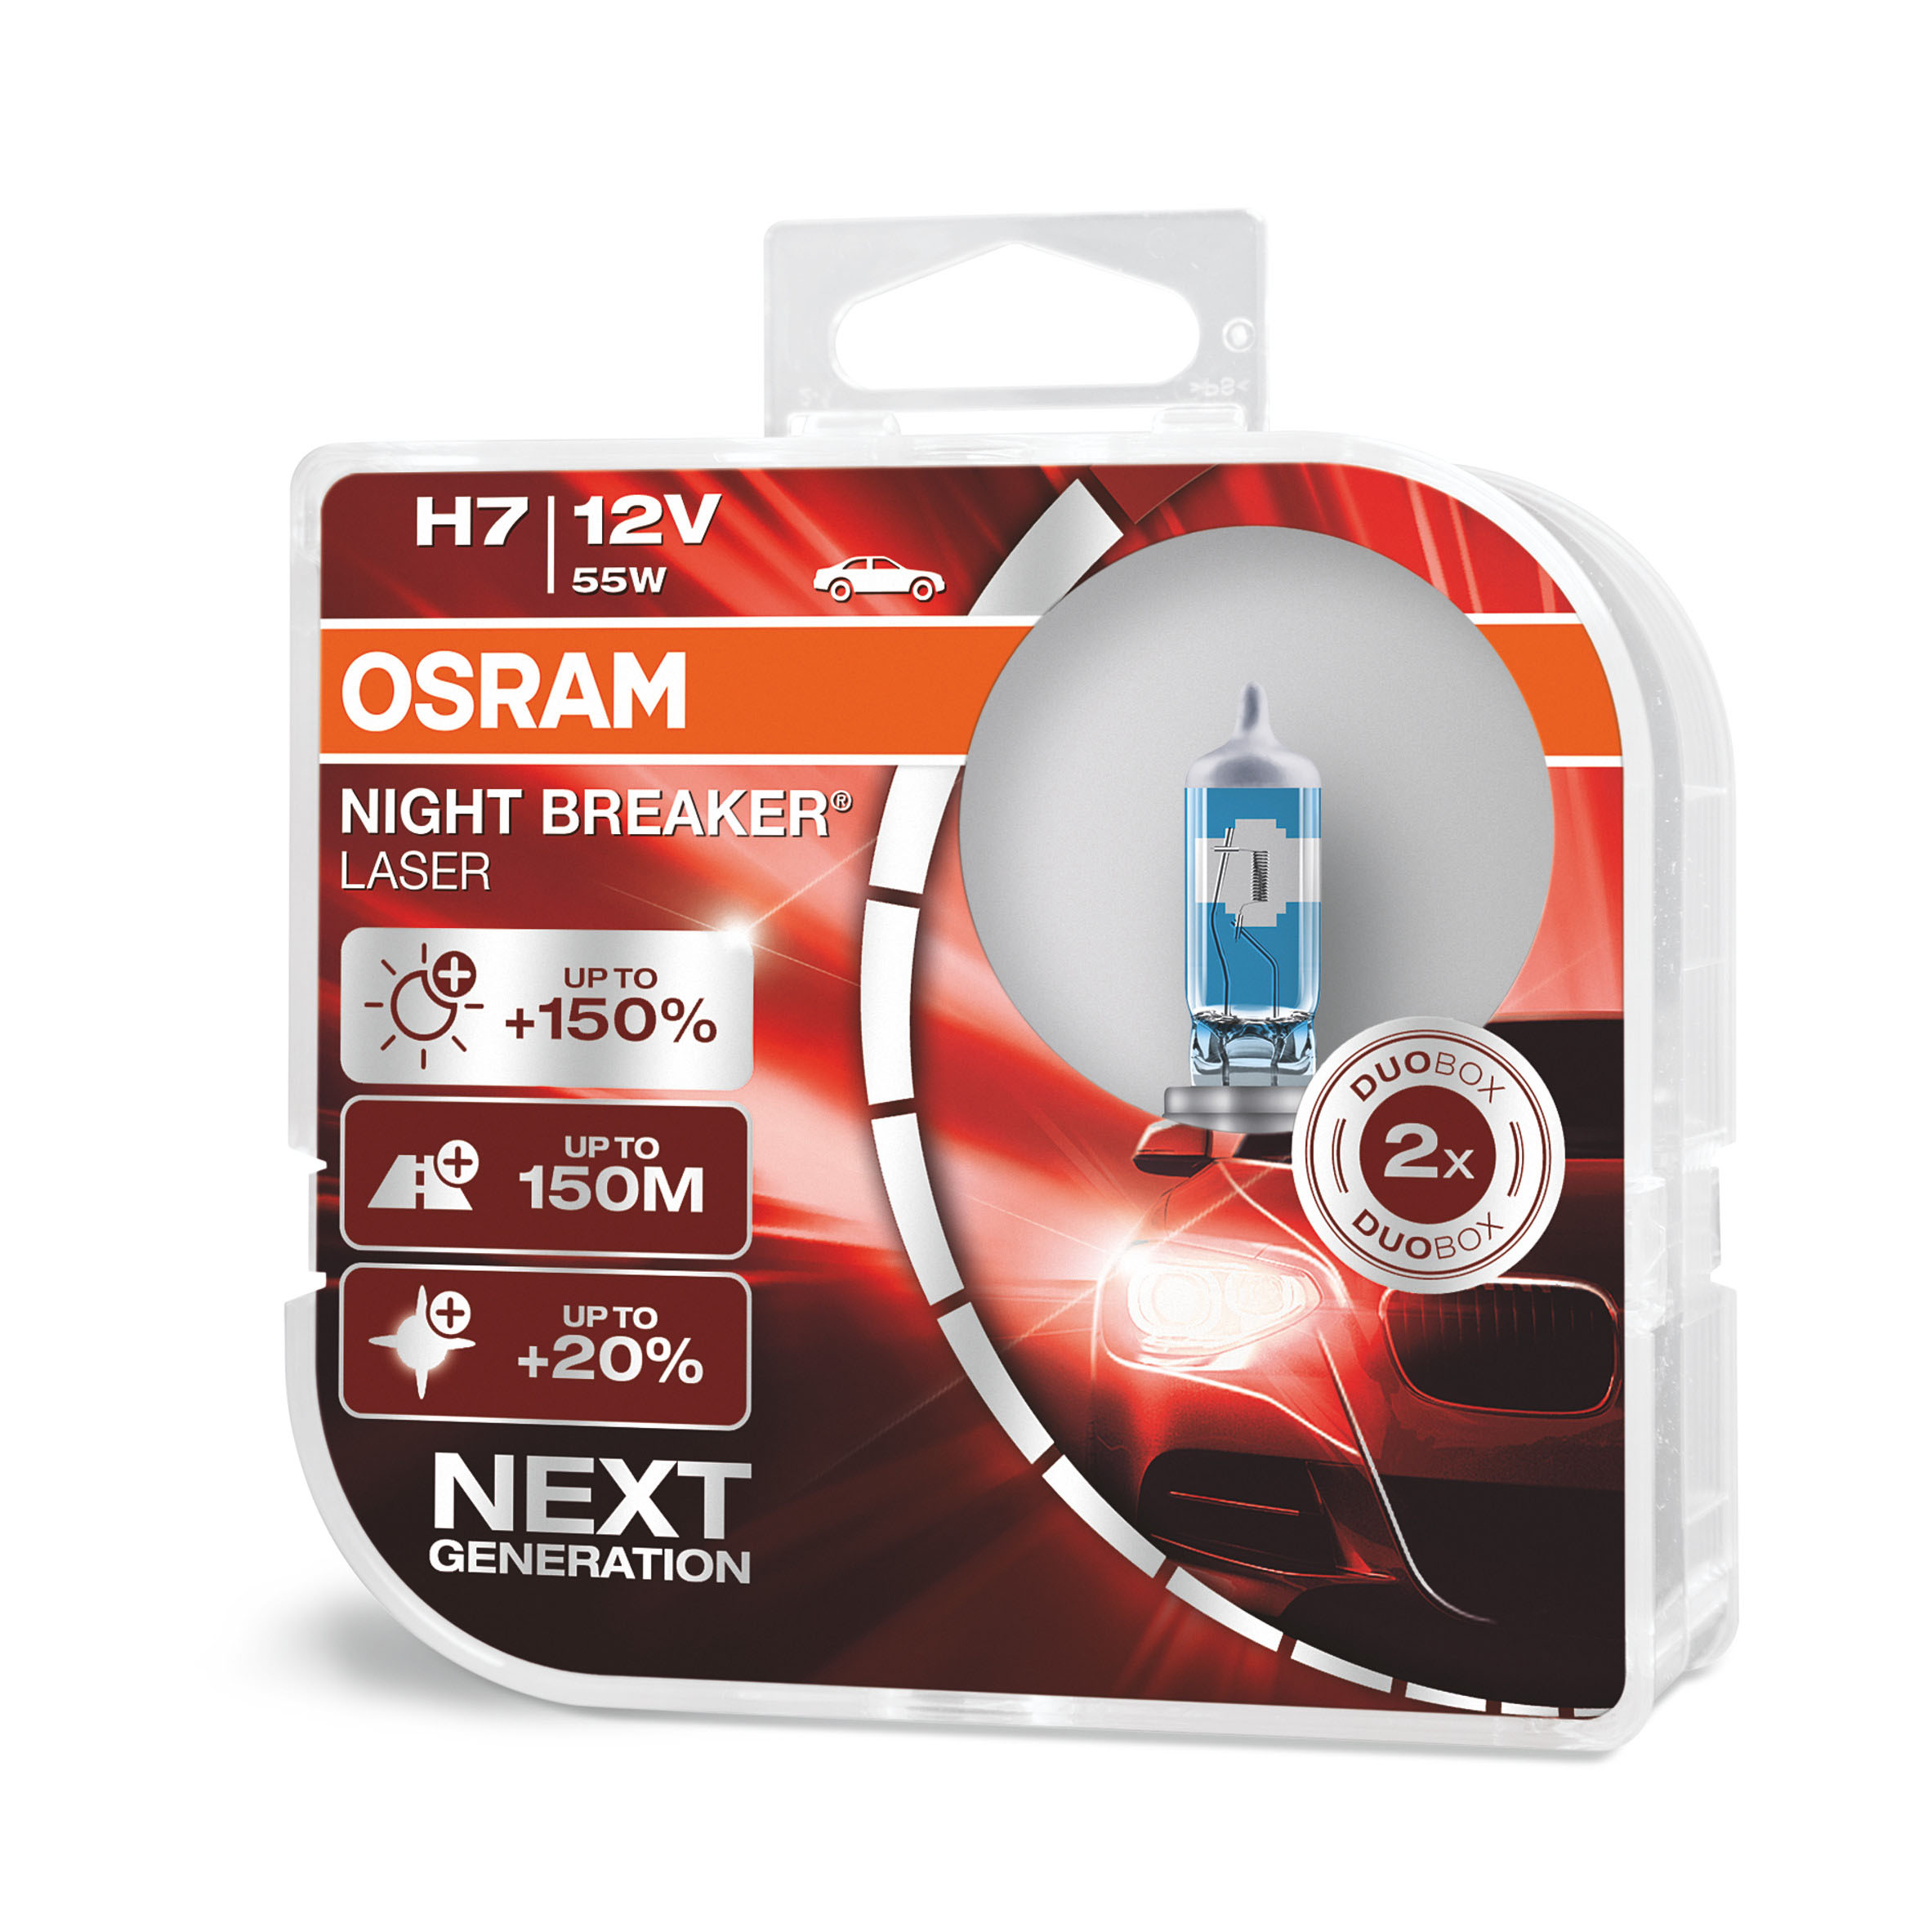 H7 OSRAM Night Breaker Laser 150% Next Generation 12V 55W (Pair)